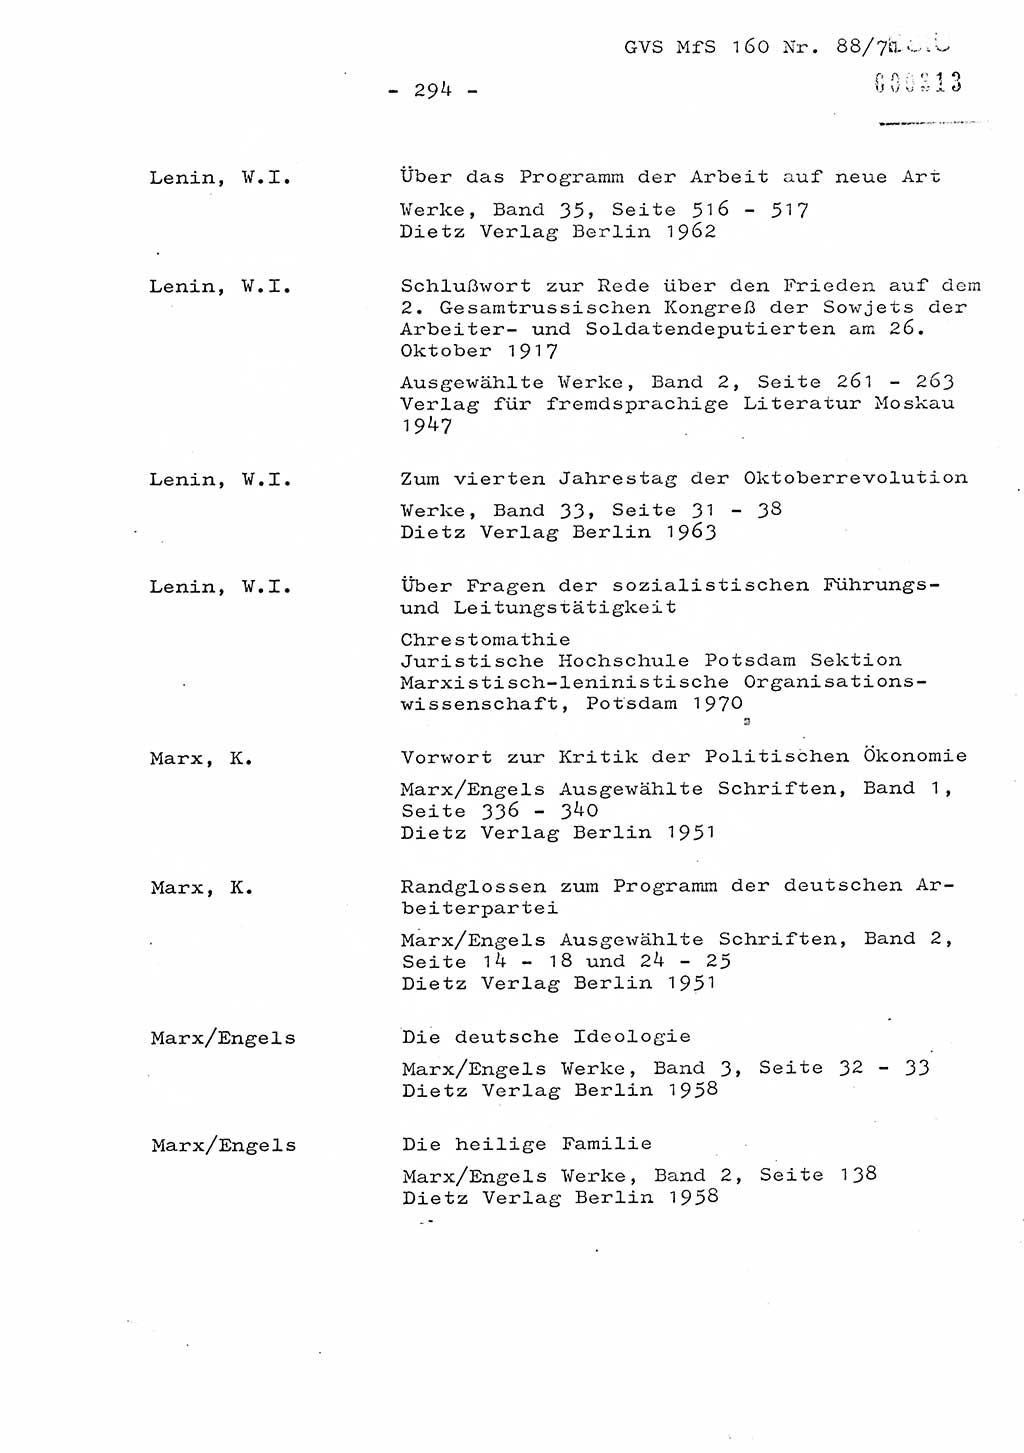 Dissertation Oberstleutnant Josef Schwarz (BV Schwerin), Major Fritz Amm (JHS), Hauptmann Peter Gräßler (JHS), Ministerium für Staatssicherheit (MfS) [Deutsche Demokratische Republik (DDR)], Juristische Hochschule (JHS), Geheime Verschlußsache (GVS) 160-88/71, Potsdam 1972, Seite 294 (Diss. MfS DDR JHS GVS 160-88/71 1972, S. 294)